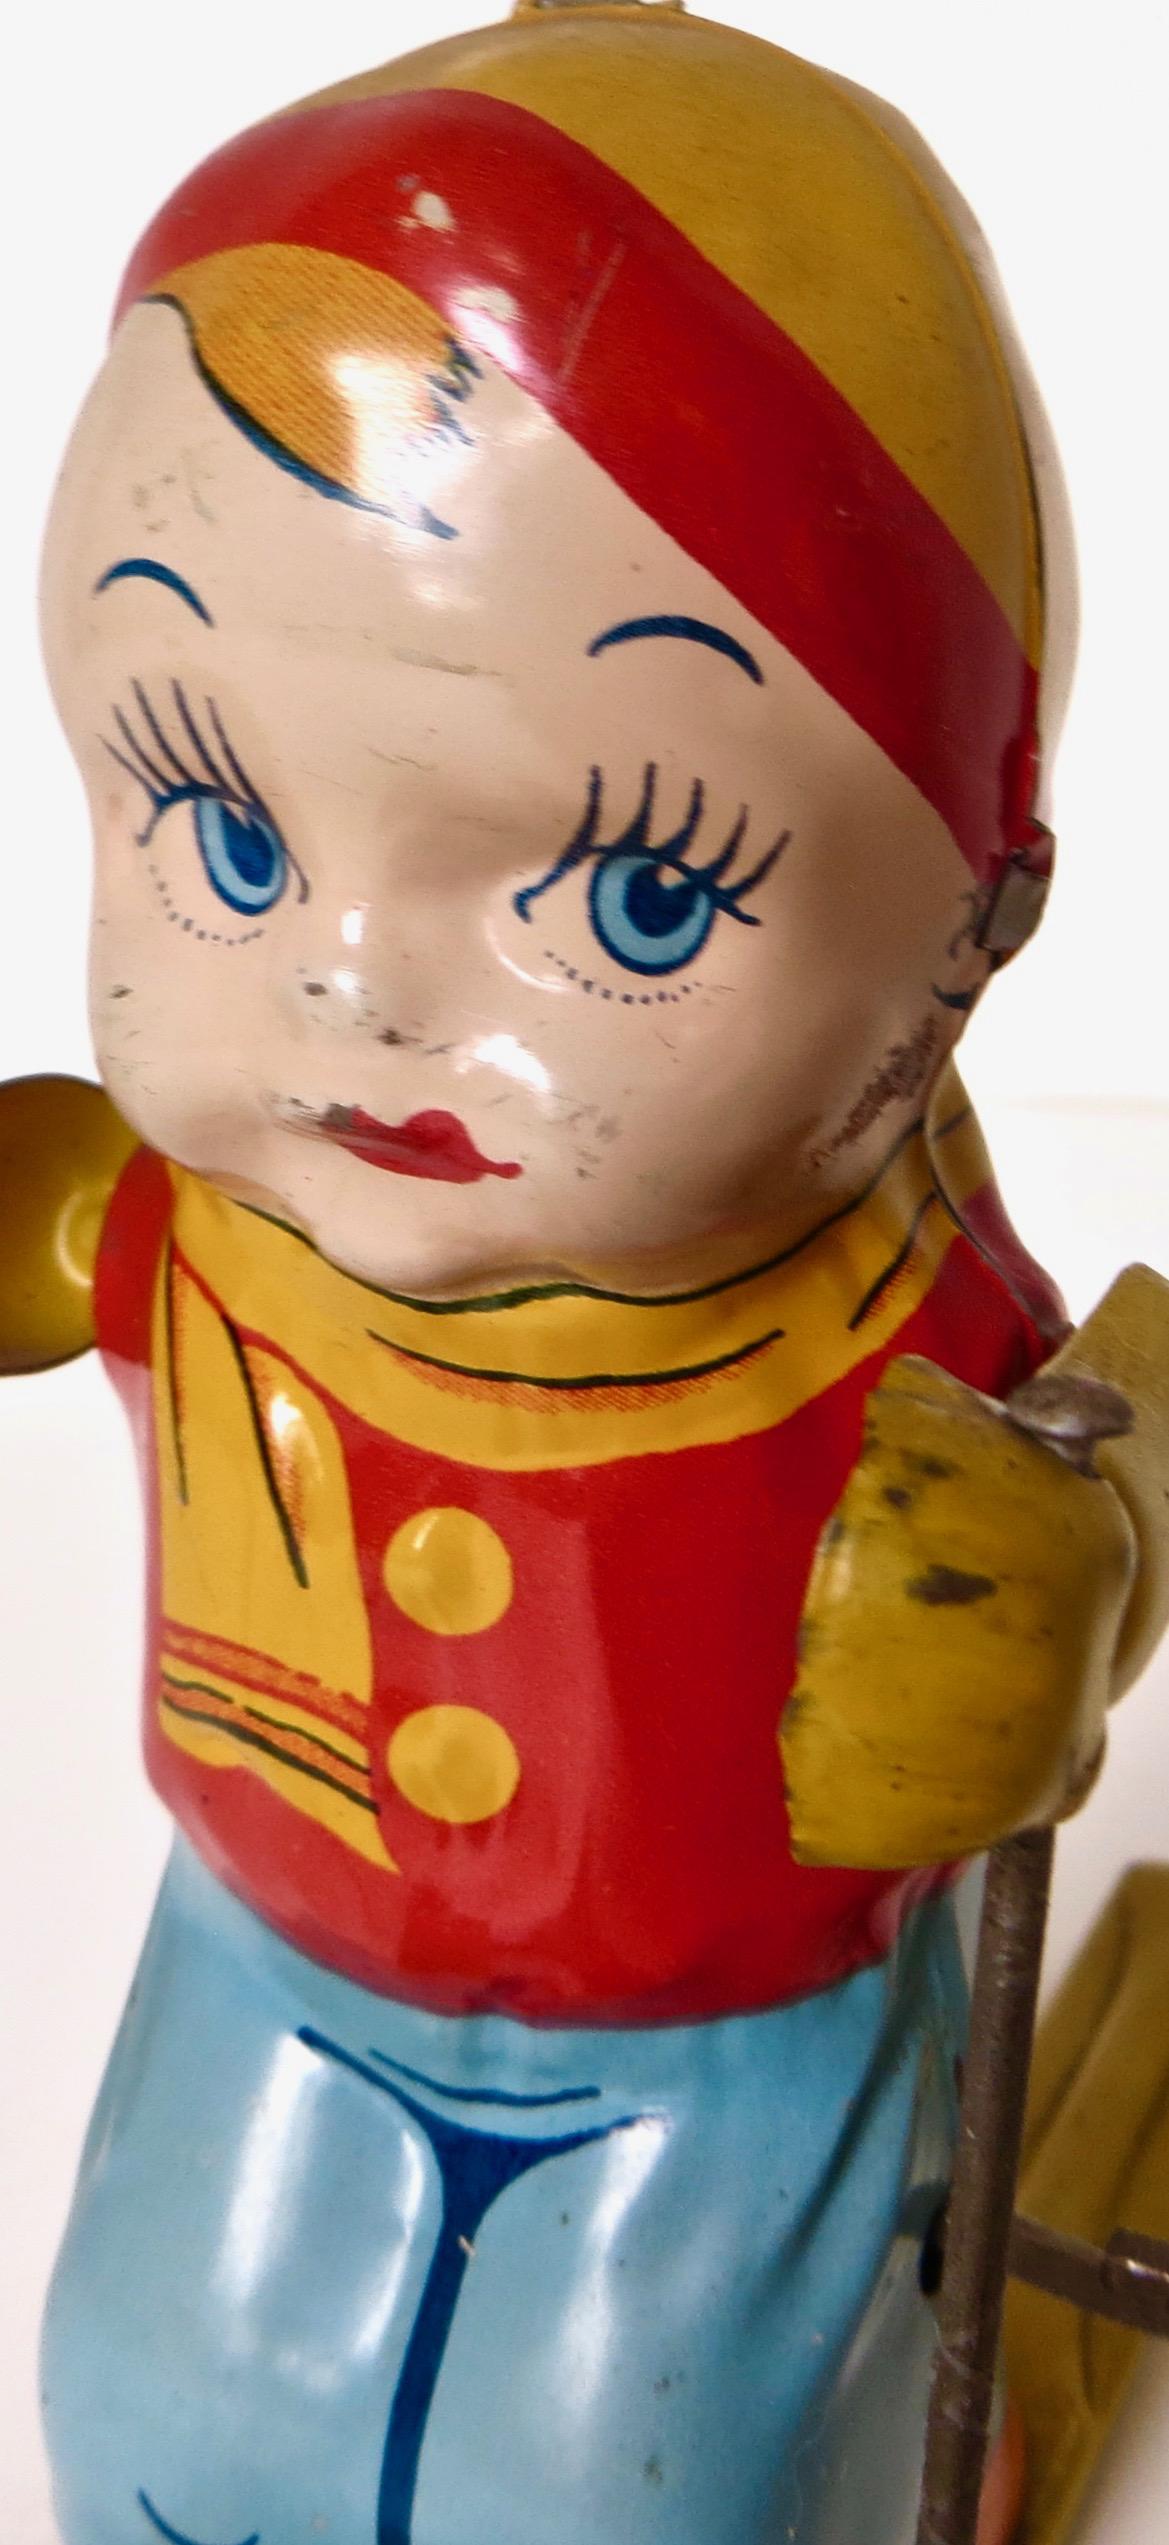 Mid-20th Century Vintage Tin Wind Up Toy 